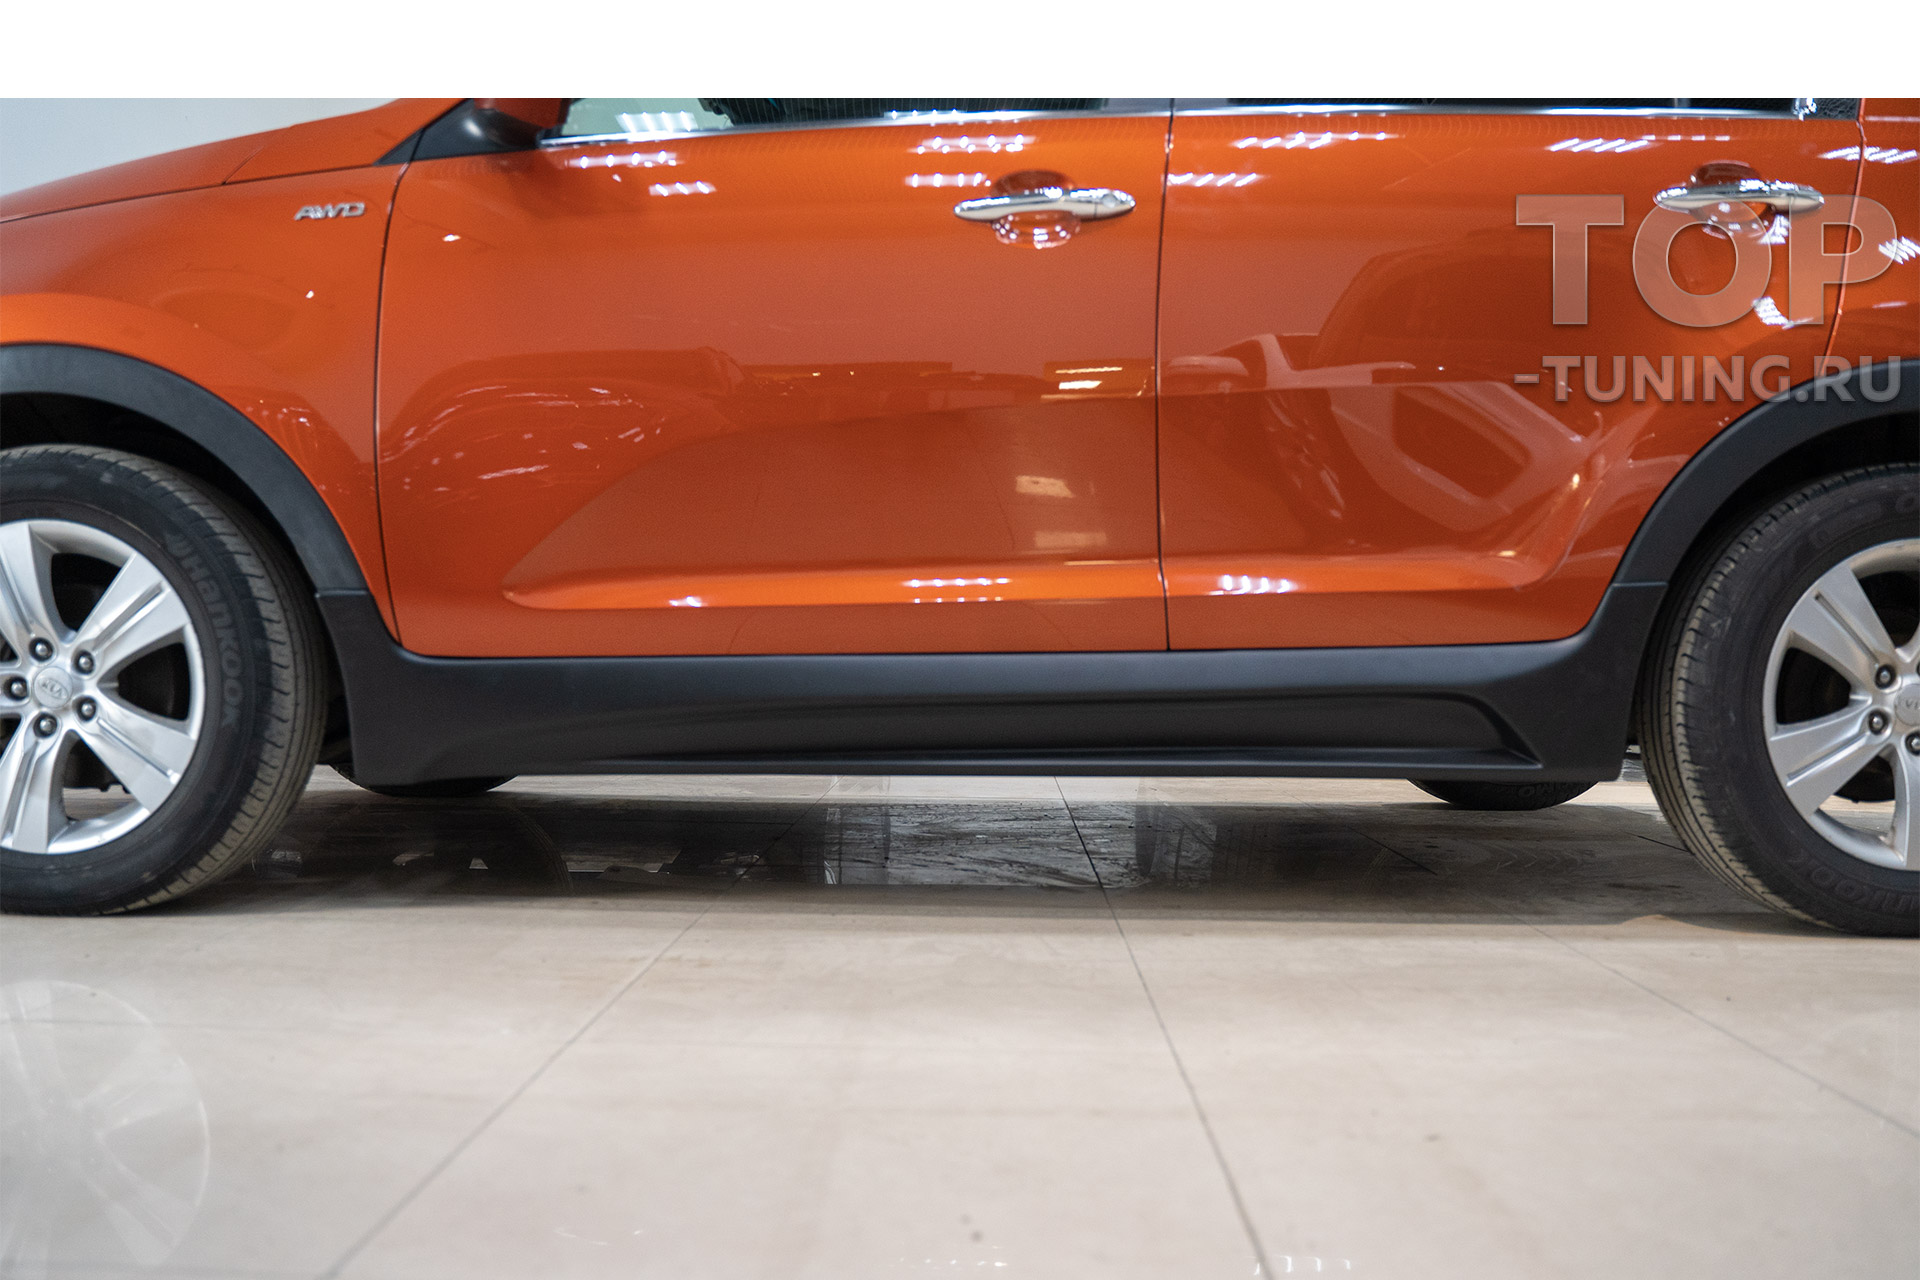 Накладки на пороги для Kia Sportage 3 – пример установки и обзор готовой работы Топ Тюнинг